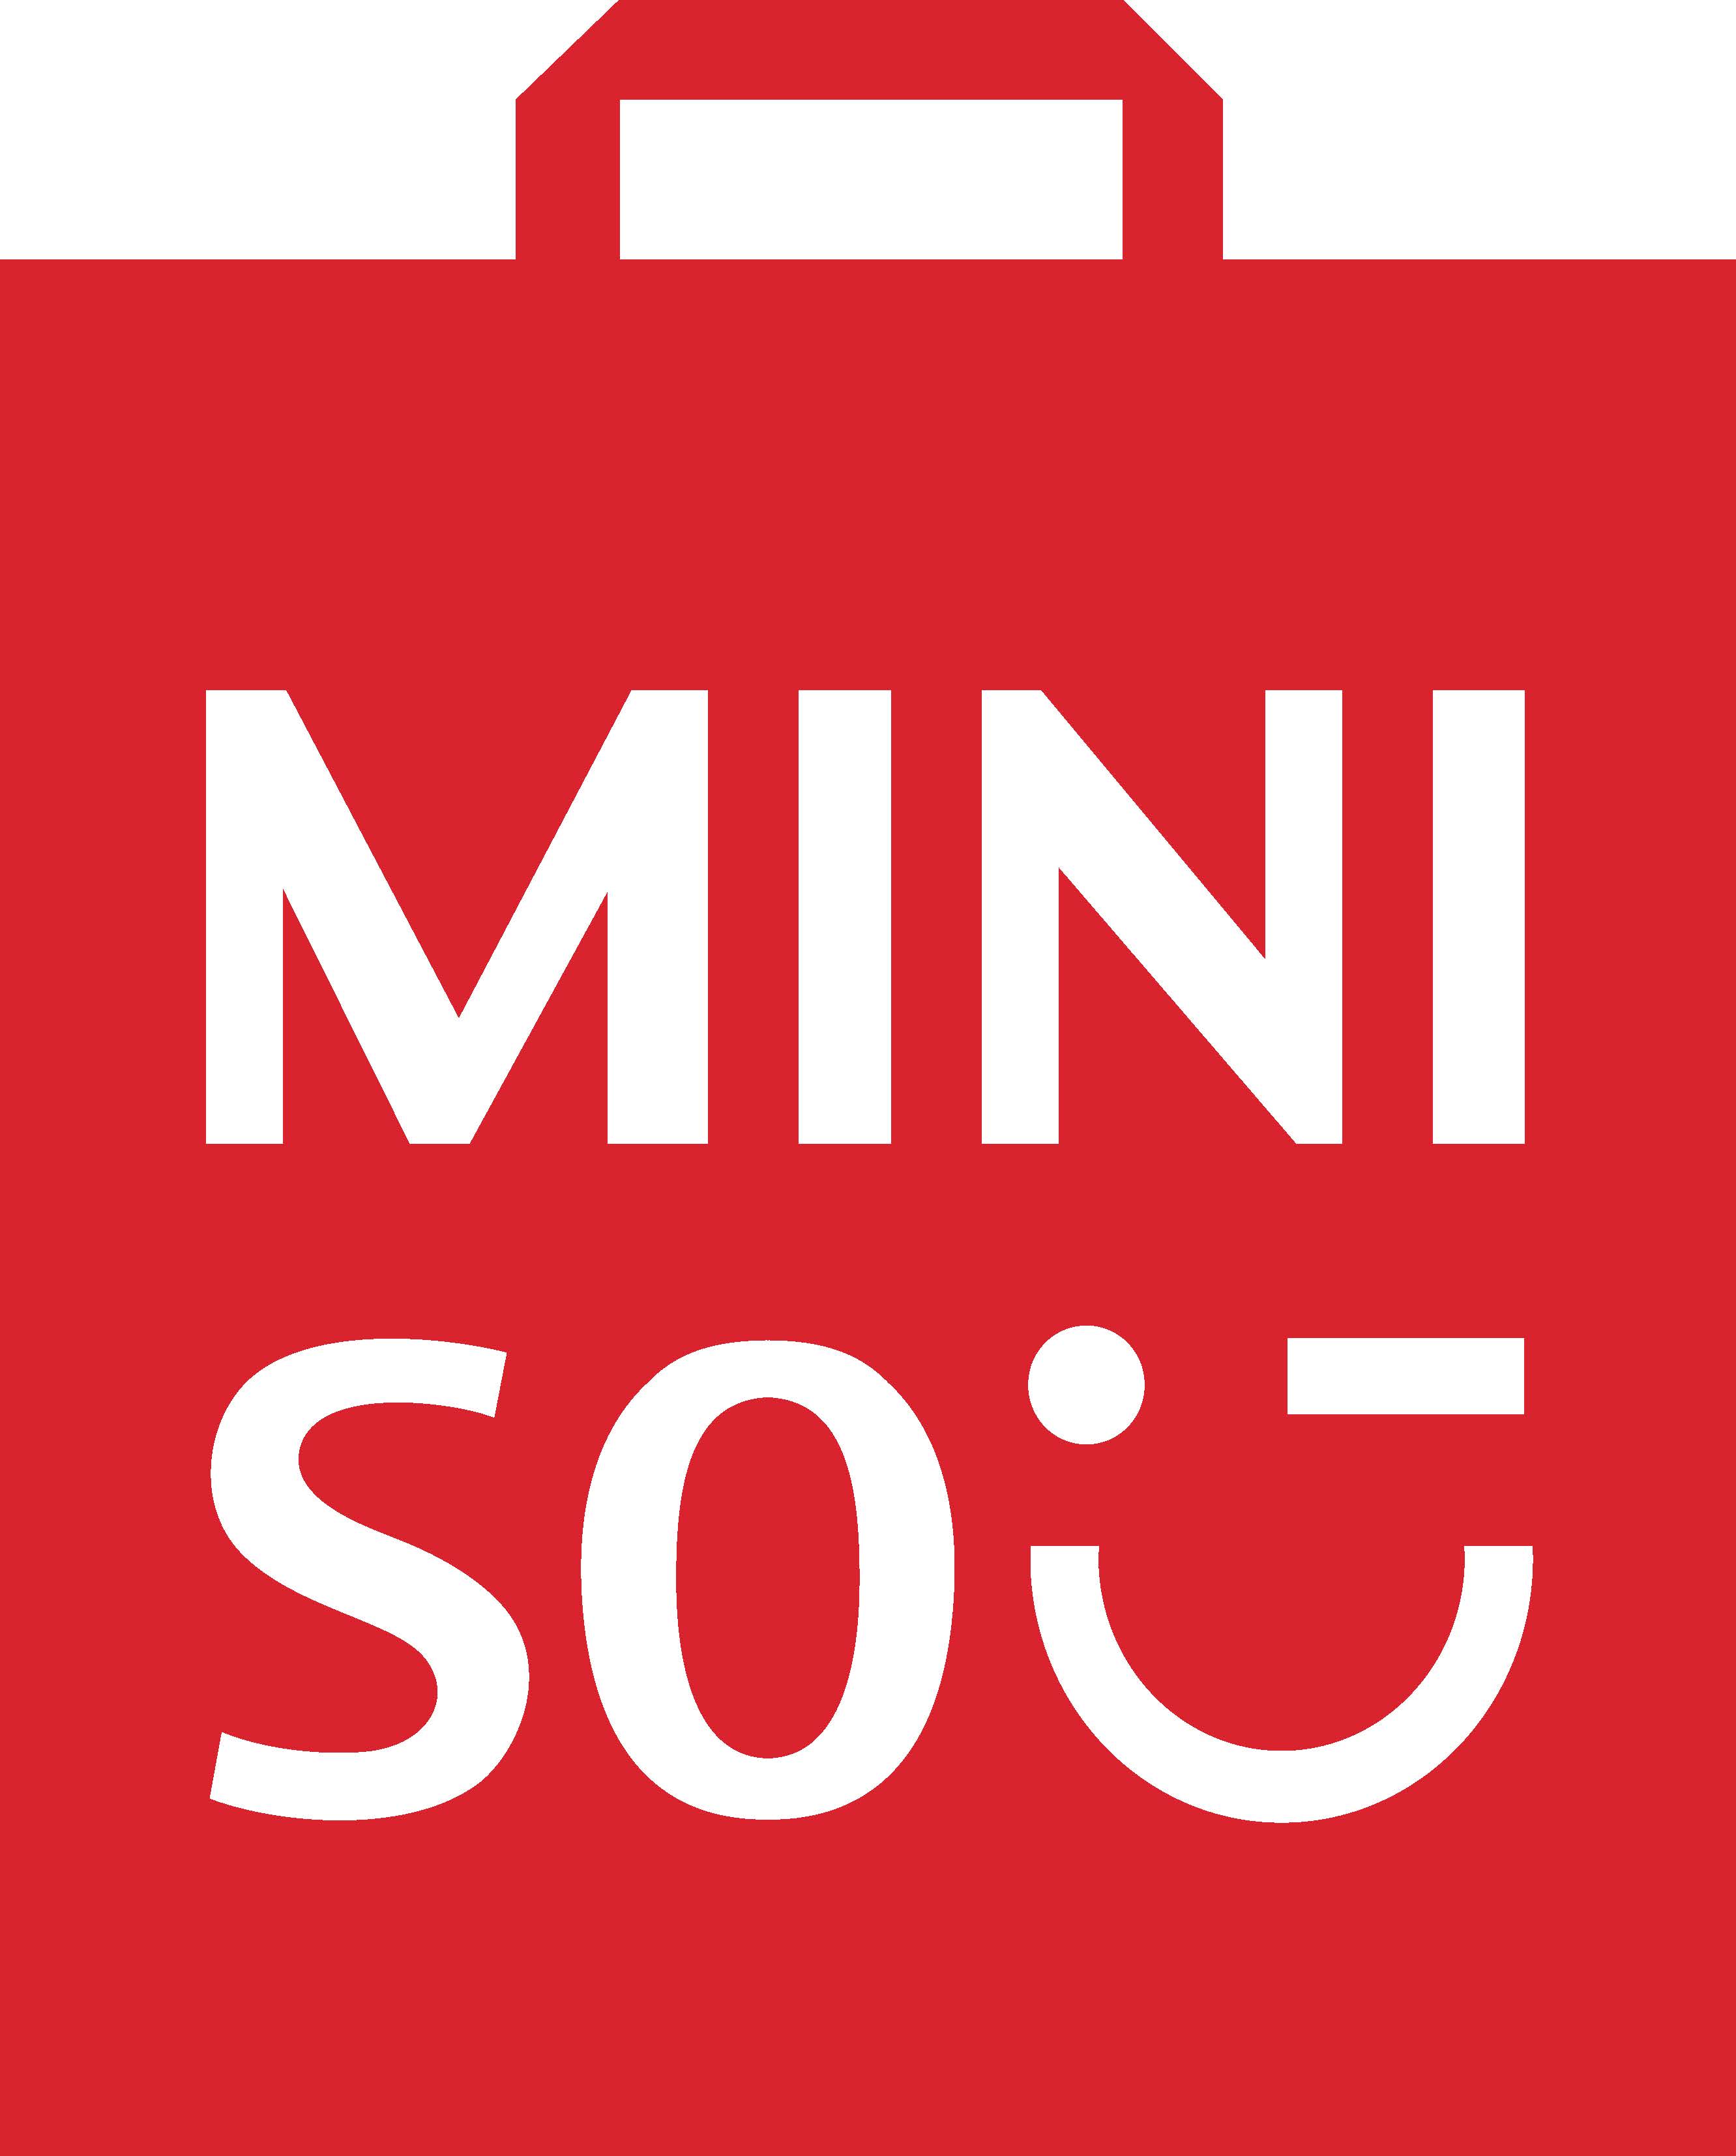 MINISO Group Holding Ltd